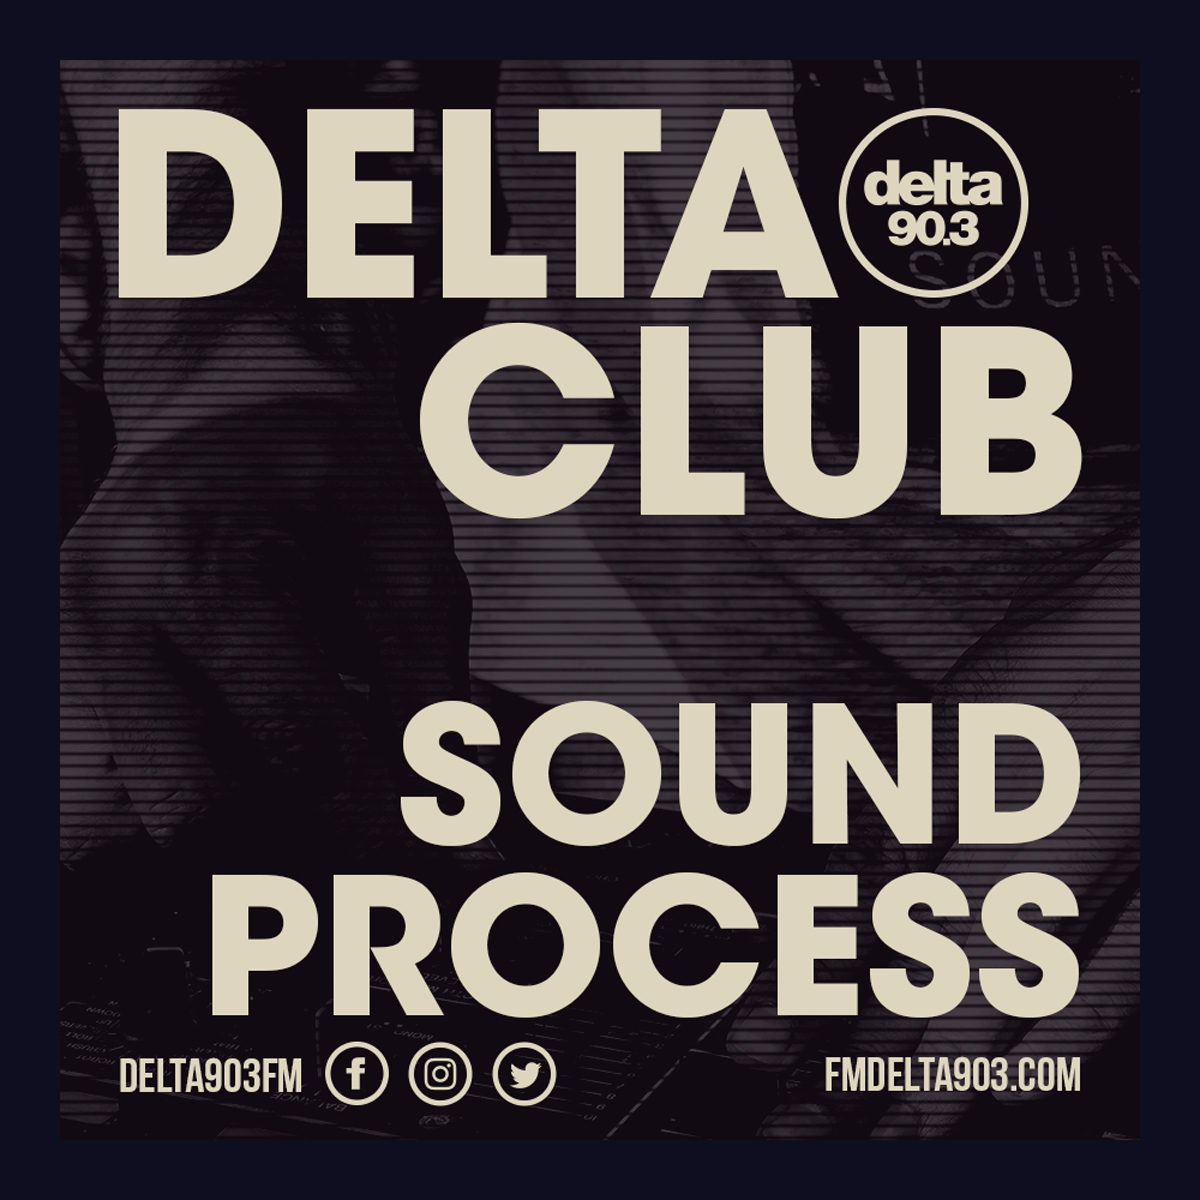 Delta Podcasts - Delta Club presents Sound Process (21.06.2018)